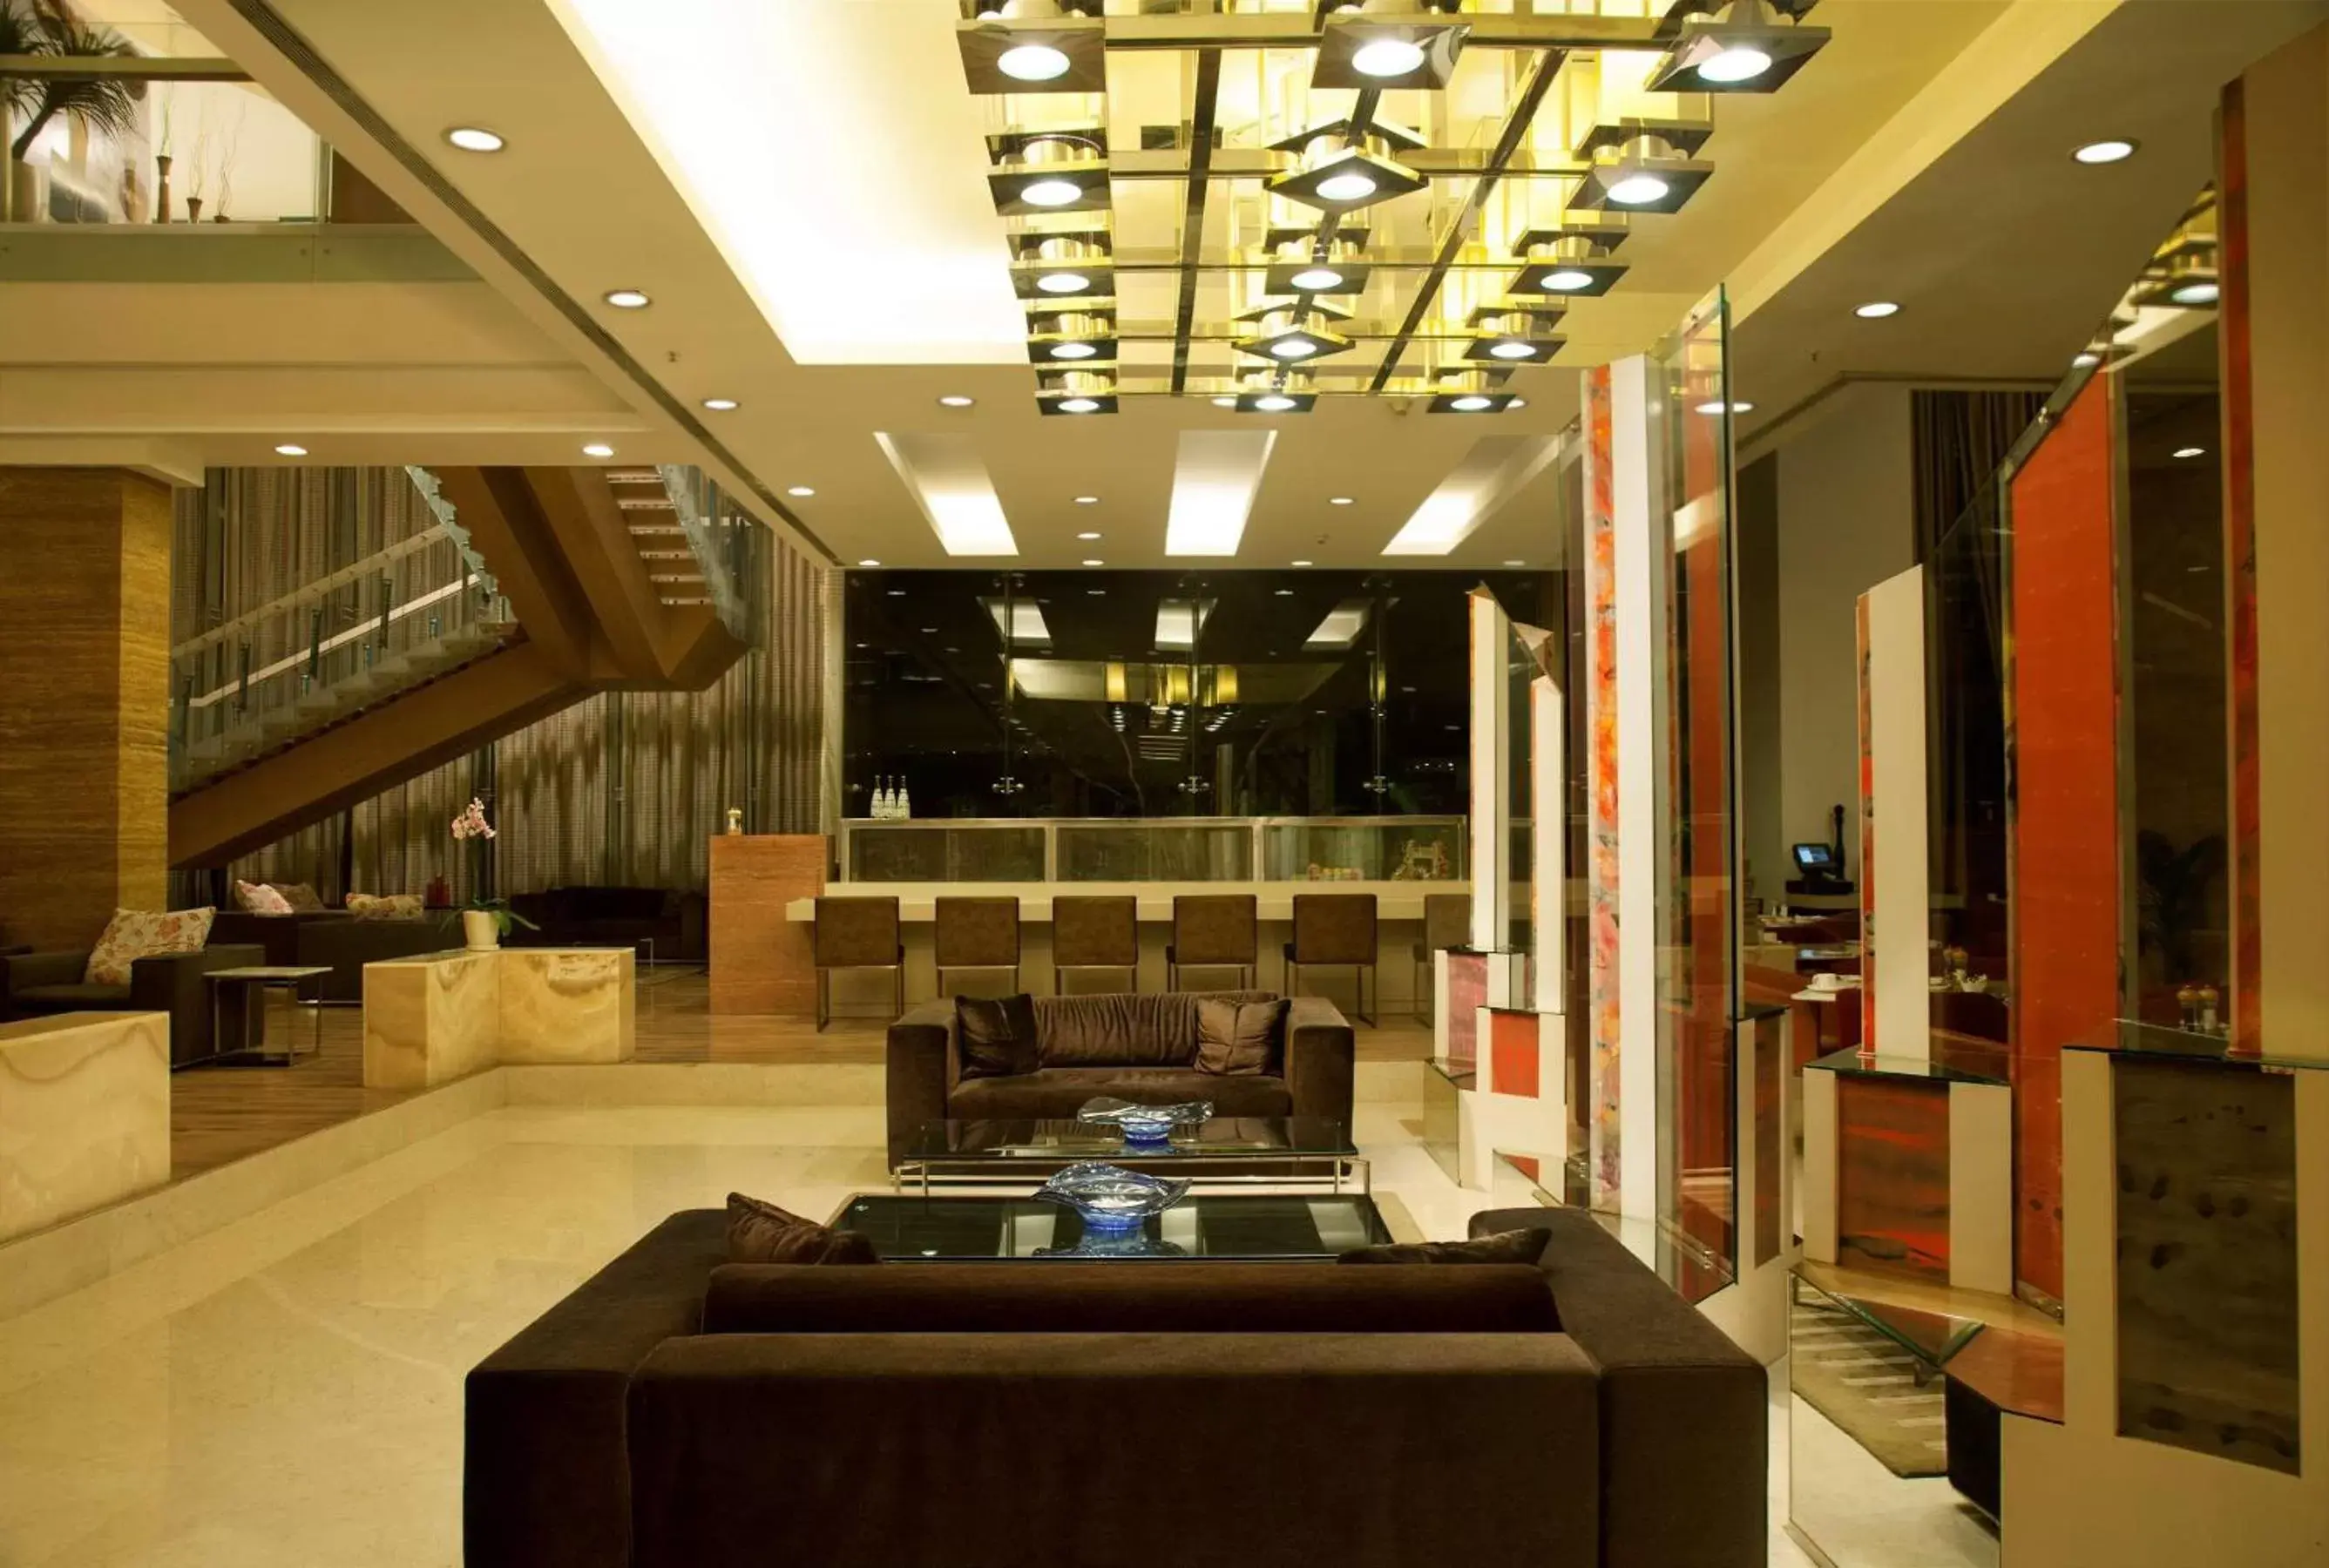 Lobby or reception, Lobby/Reception in Radisson Blu Hotel Pune Kharadi